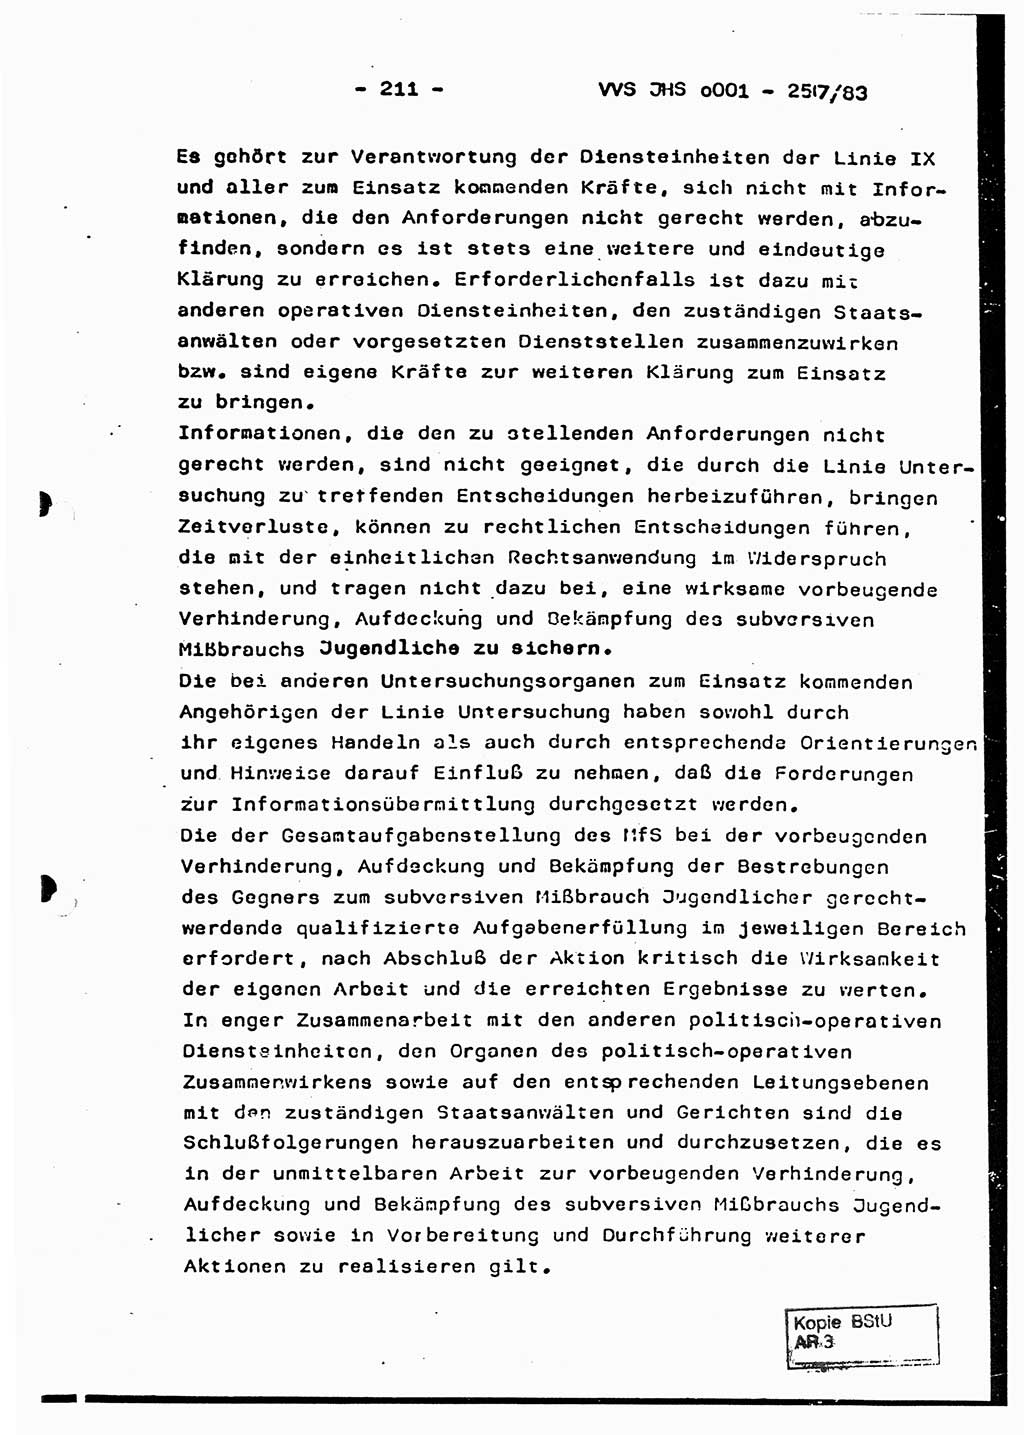 Dissertation, Oberst Helmut Lubas (BV Mdg.), Oberstleutnant Manfred Eschberger (HA IX), Oberleutnant Hans-Jürgen Ludwig (JHS), Ministerium für Staatssicherheit (MfS) [Deutsche Demokratische Republik (DDR)], Juristische Hochschule (JHS), Vertrauliche Verschlußsache (VVS) o001-257/83, Potsdam 1983, Seite 211 (Diss. MfS DDR JHS VVS o001-257/83 1983, S. 211)